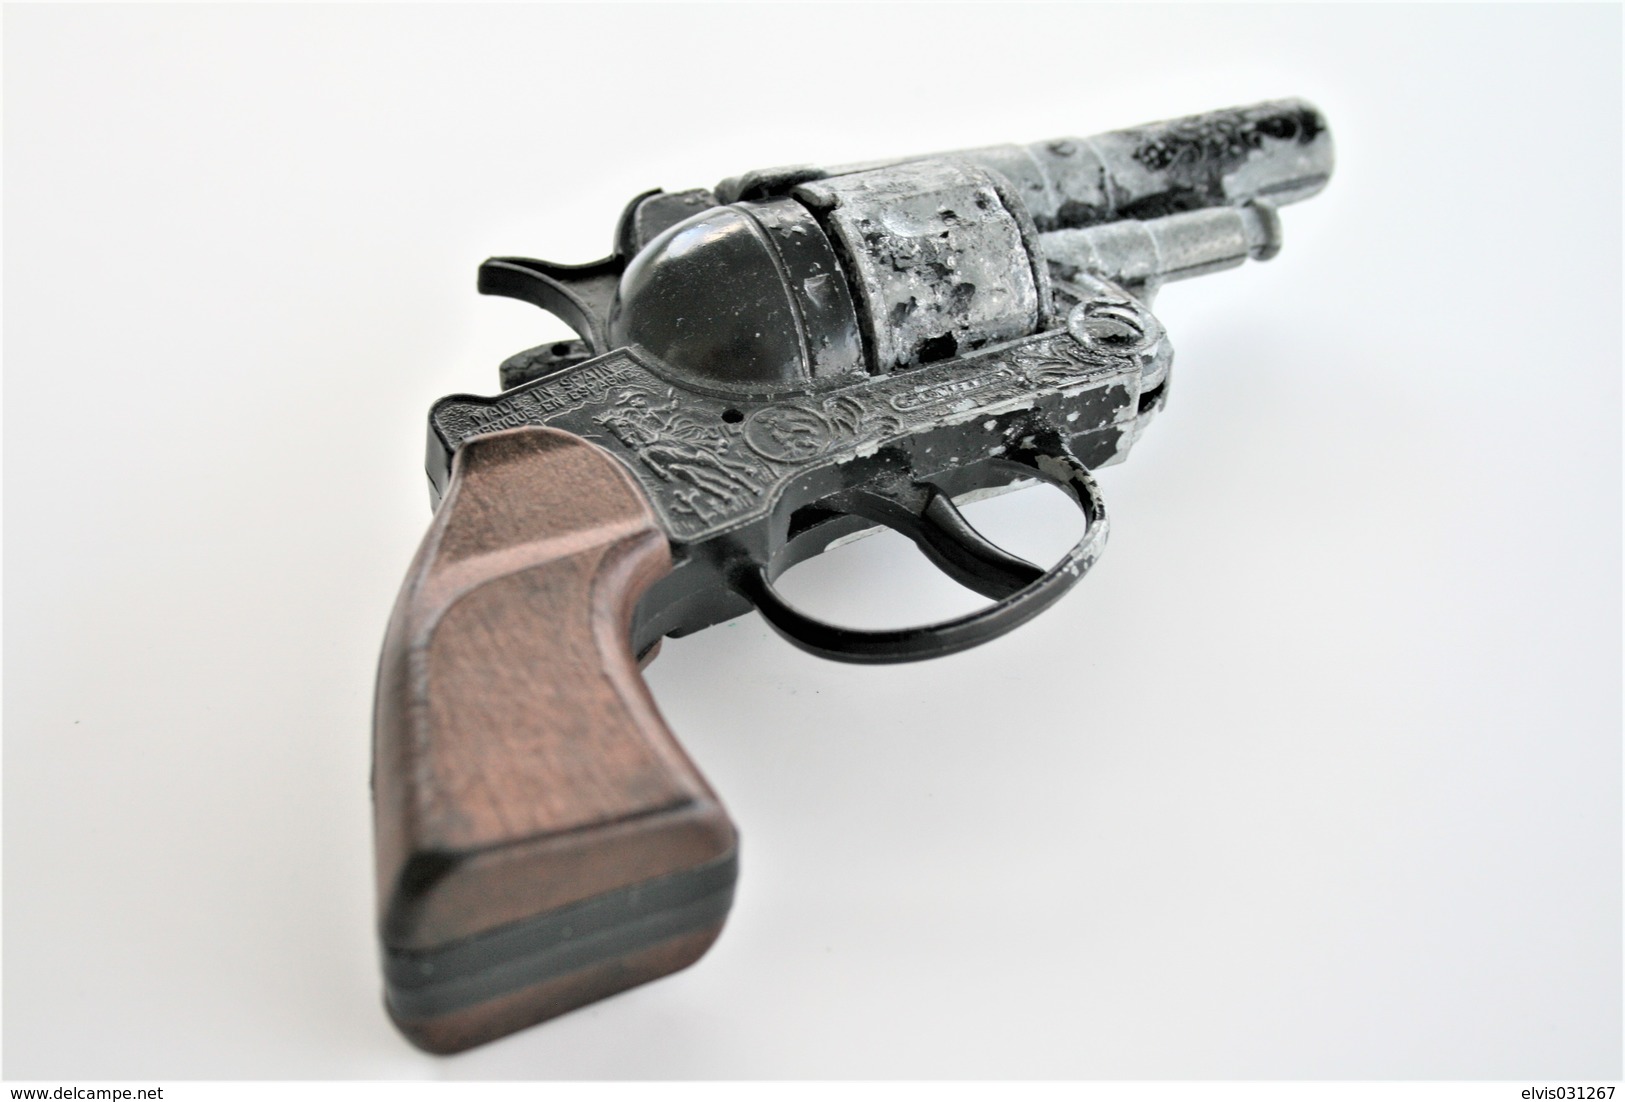 Vintage TOY GUN : GONHER N°74 - L=16cm - 19??s - Made In Spain - Keywords : Cap Gun - Cork - Rifle - Revolver - Pistol - Decorative Weapons